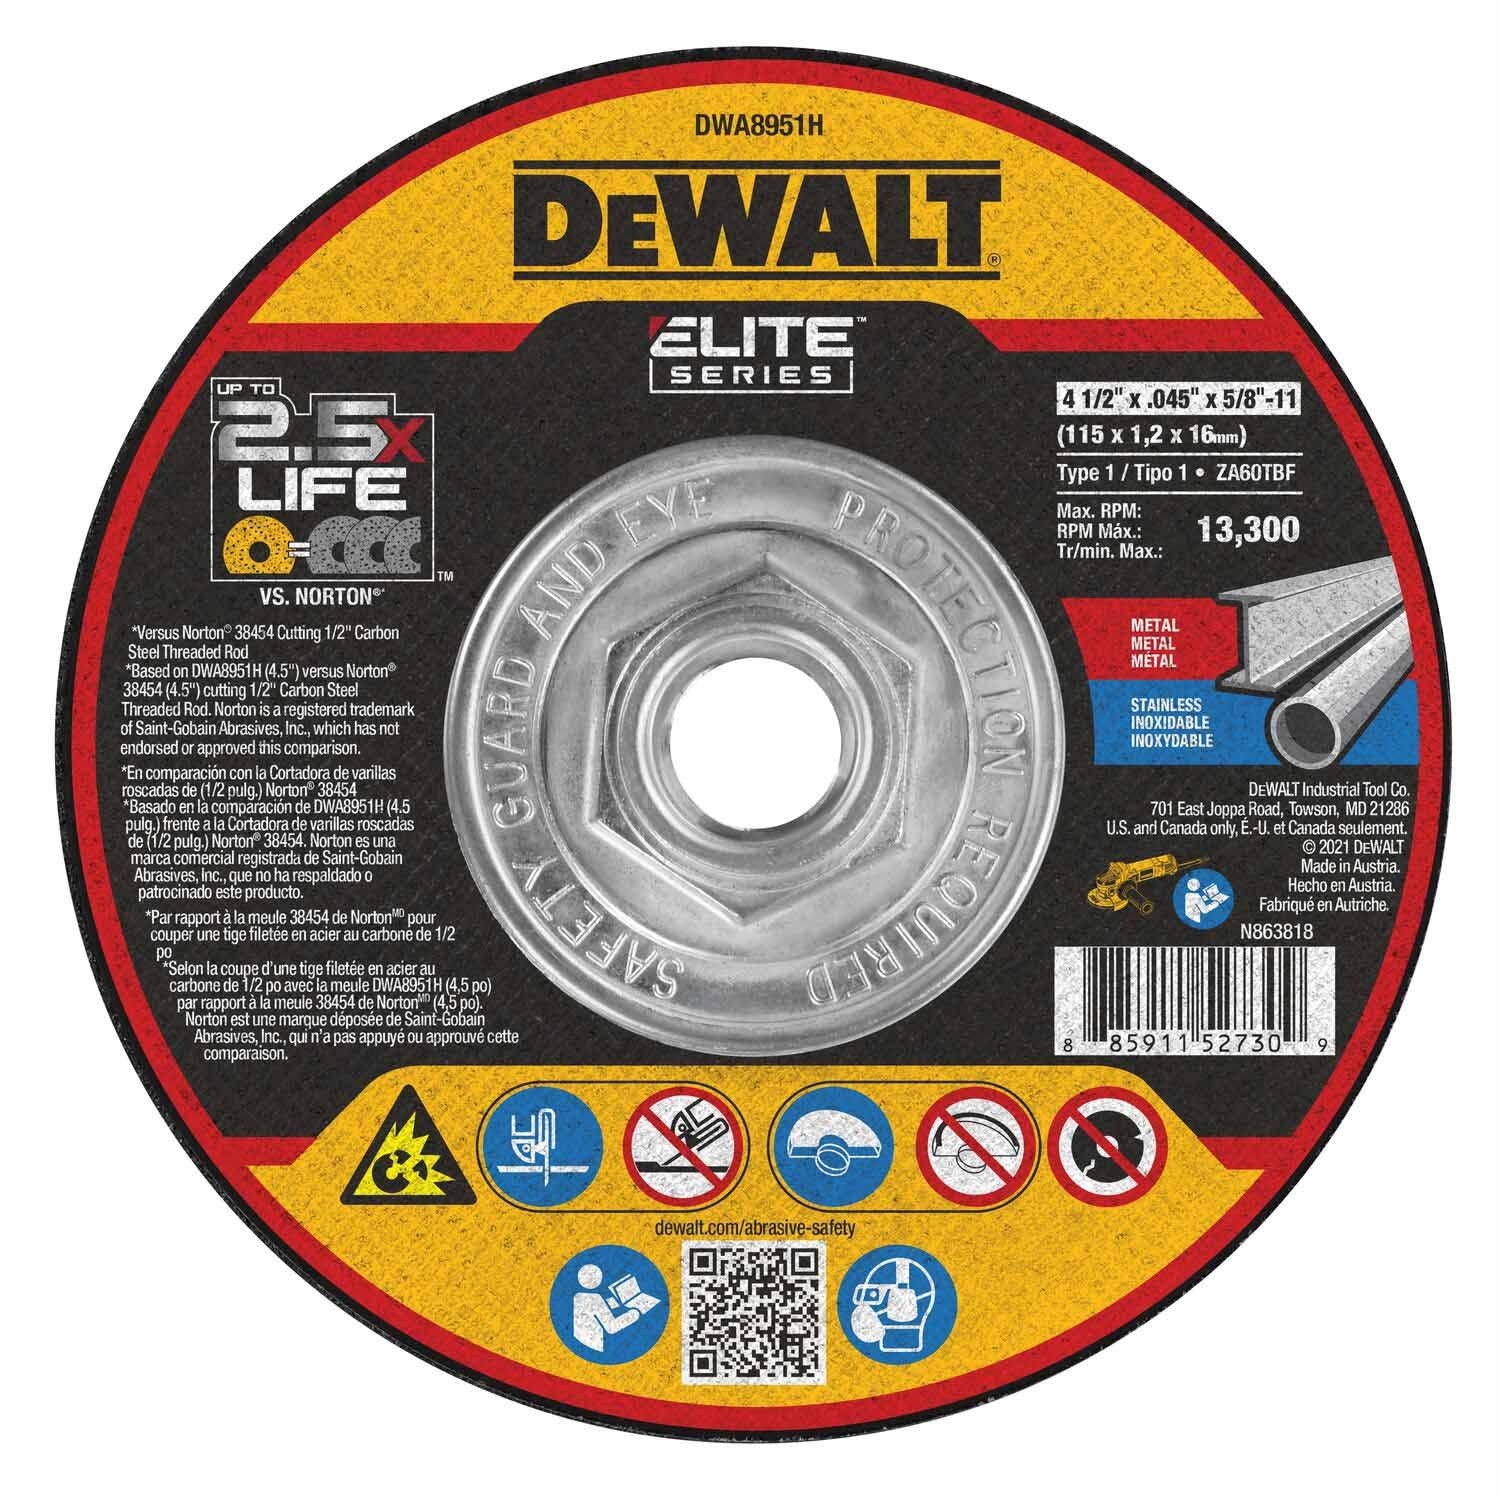 DeWalt DWA8951H Elite Series 4-1/2 x .045 x 5/8-11 XP T1 Cutting Wheels